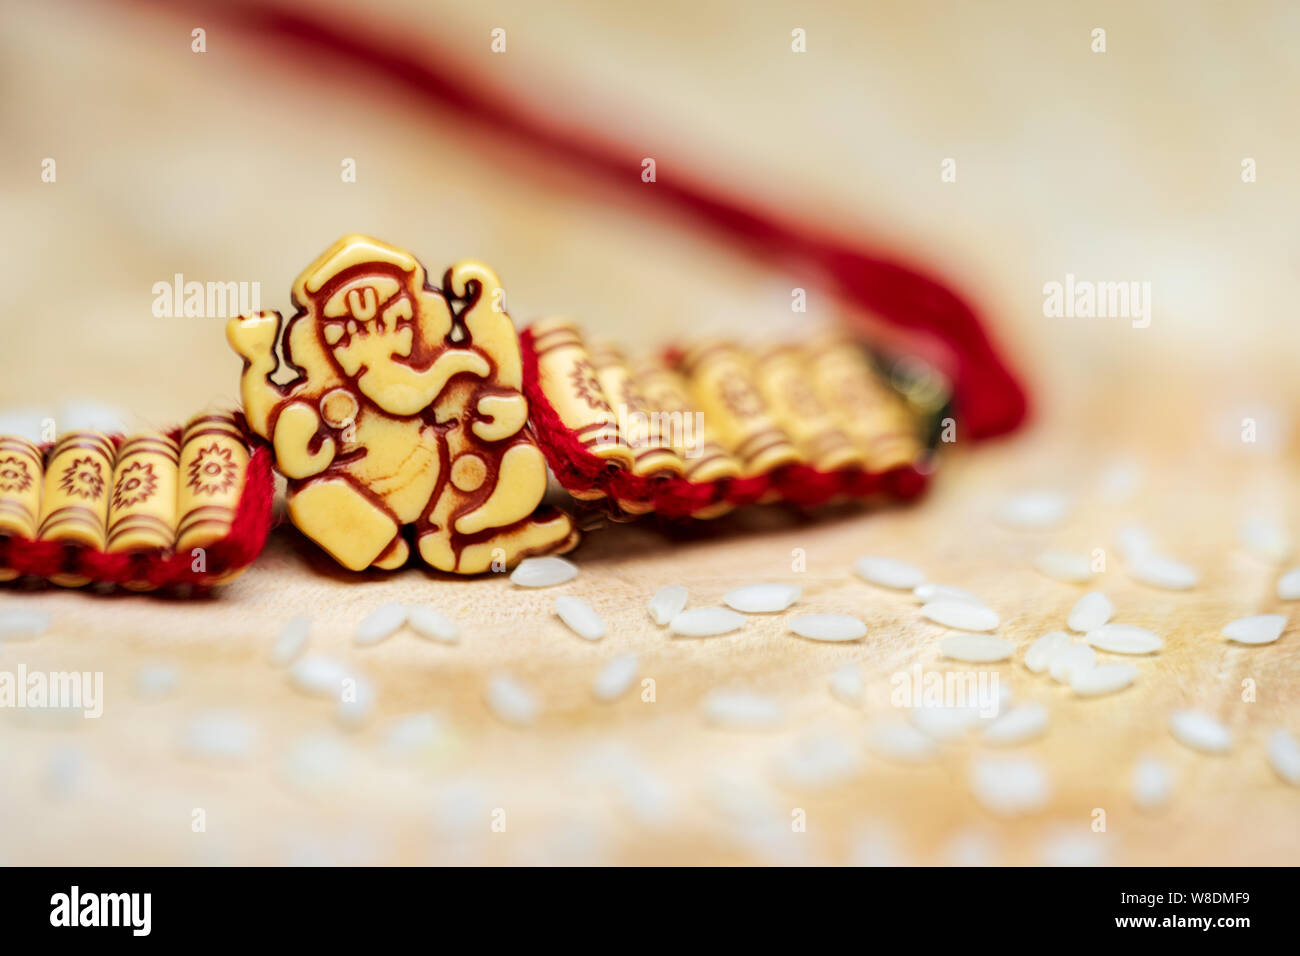 Lord Ganesha handgemachten Armband mit Reiskörner für rituelle Zwecke. Indische Rakshabandhan festival Hintergrund Konzept. Stockfoto